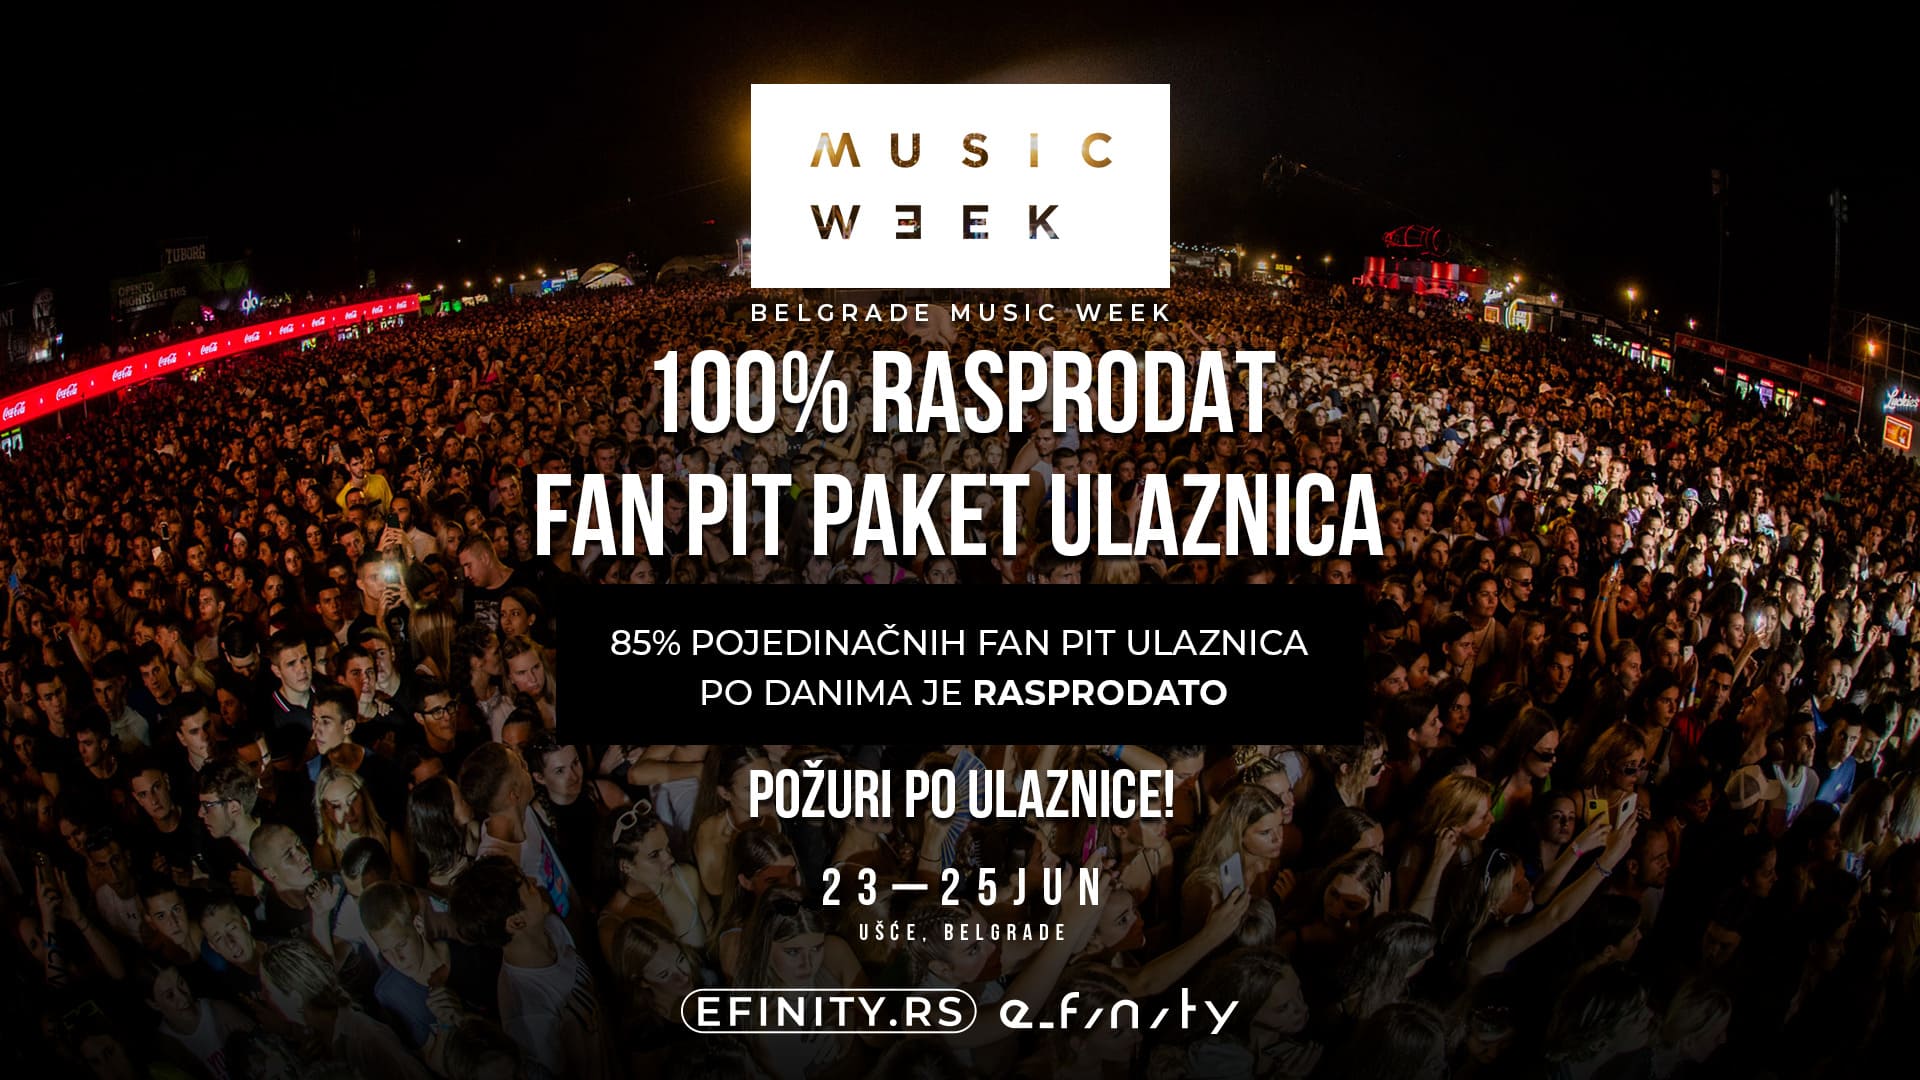 Belgrade Music Week: FAN PIT almost sold out